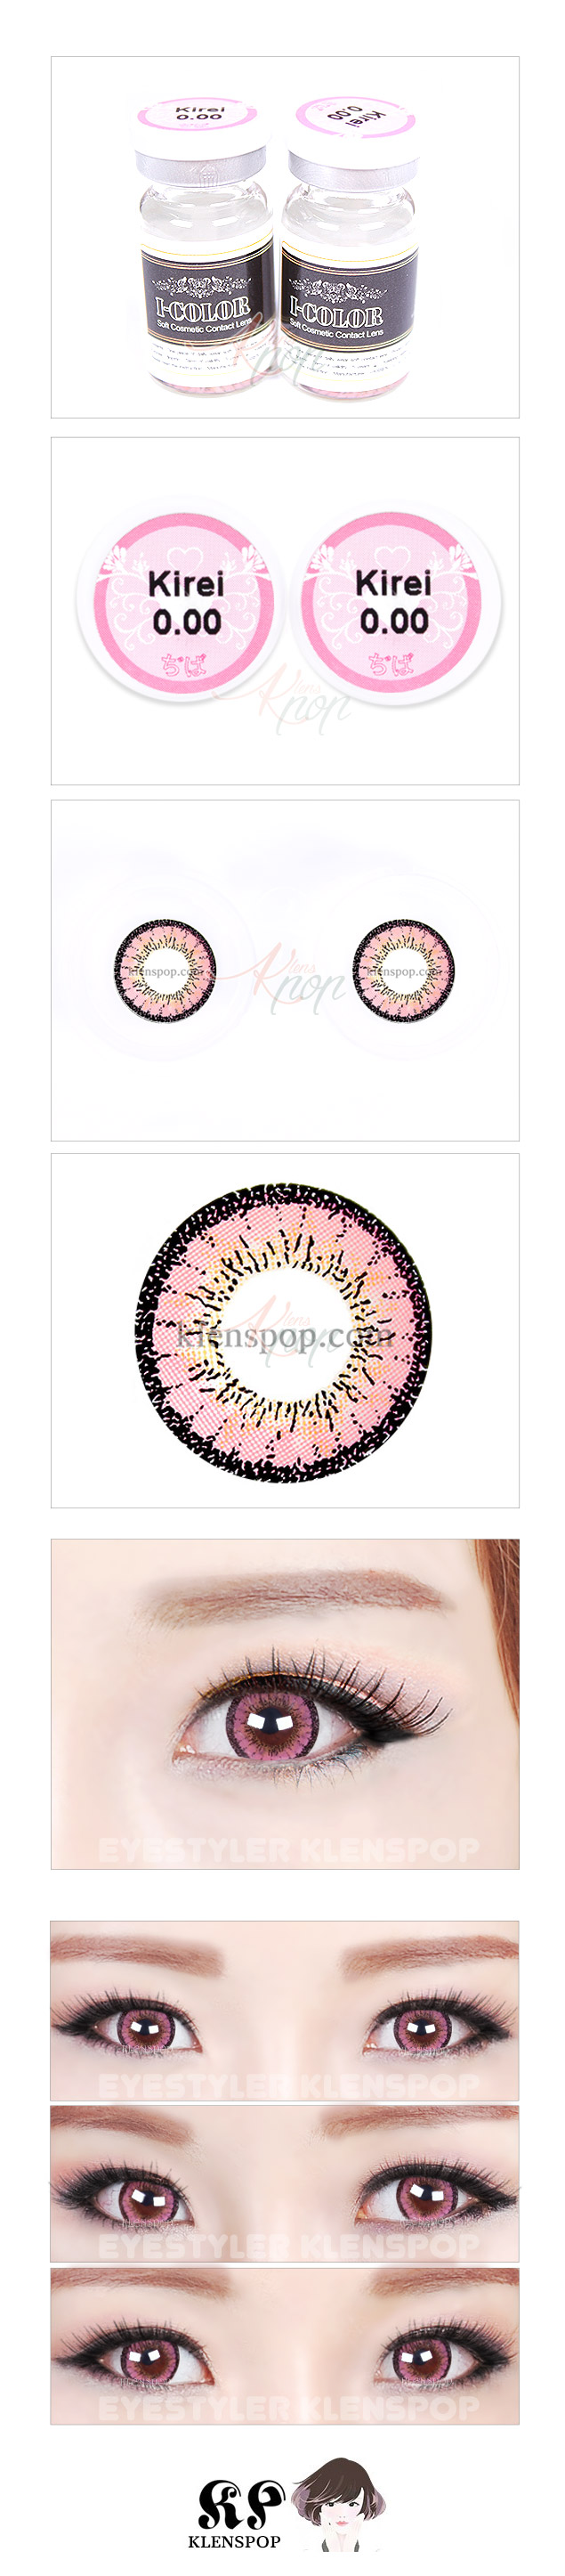 Description image of Kirei Pink Prescription Colored Contacts